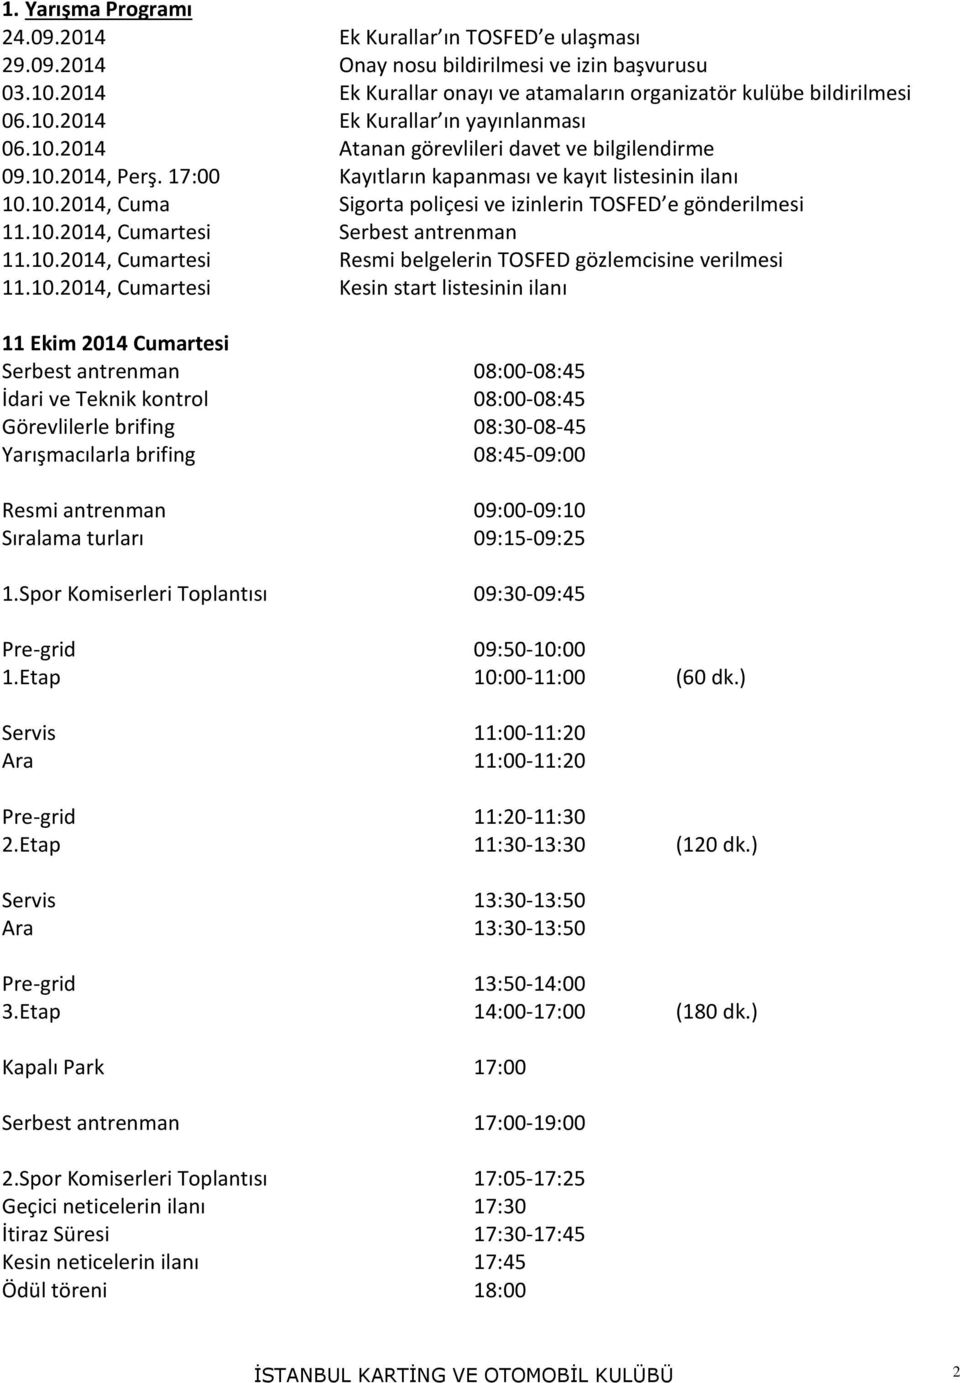 10.2014, Cumartesi Resmi belgelerin TOSFED gözlemcisine verilmesi 11.10.2014, Cumartesi Kesin start listesinin ilanı 11 Ekim 2014 Cumartesi Serbest antrenman 08:00-08:45 İdari ve Teknik kontrol